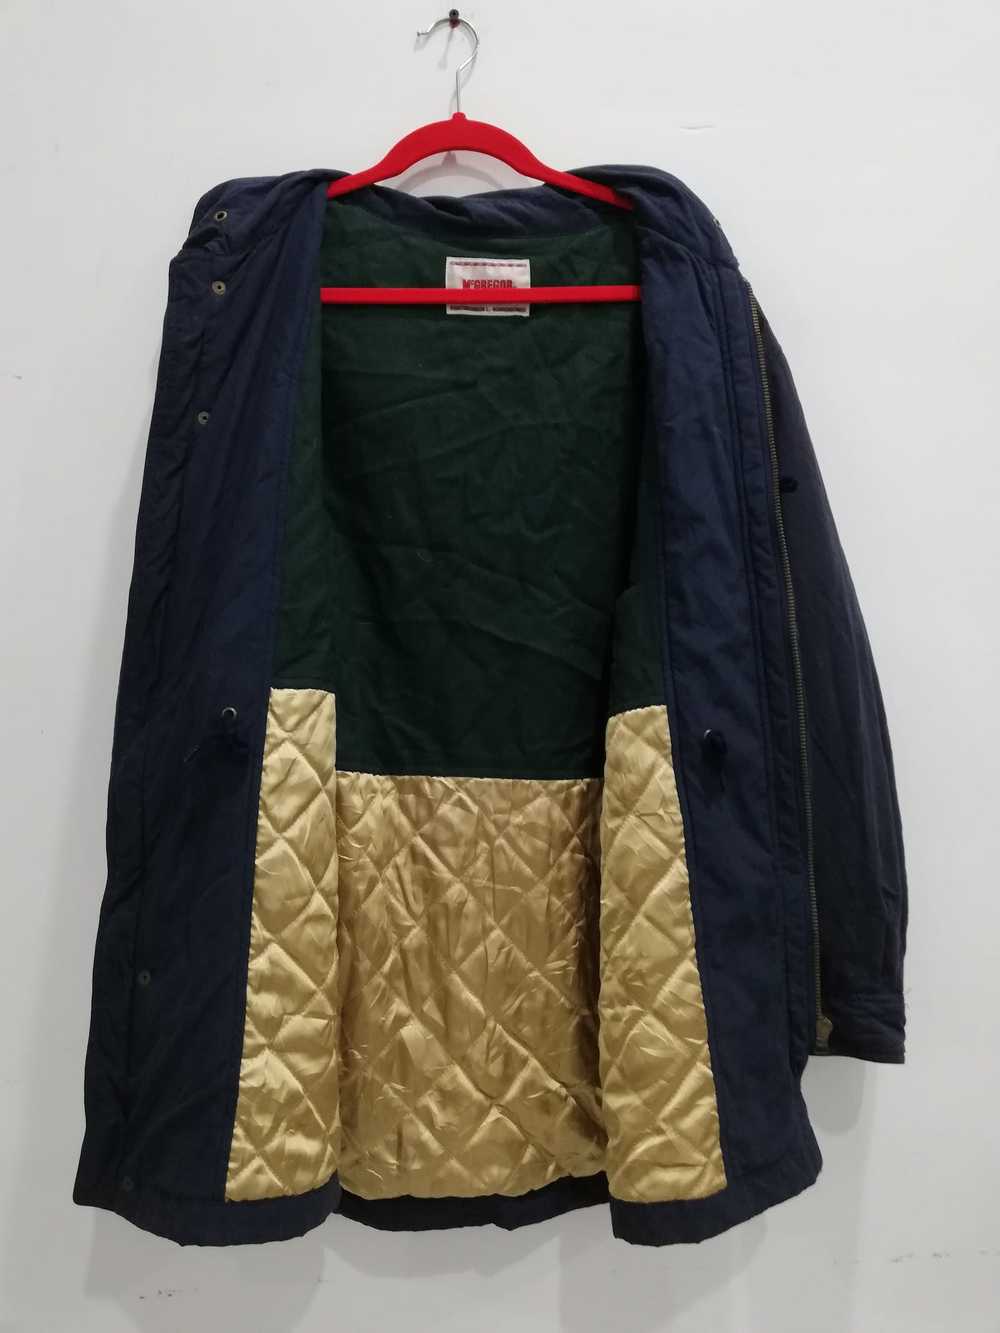 Designer × Mcgregor mc Gregor sportwear jacket - image 7